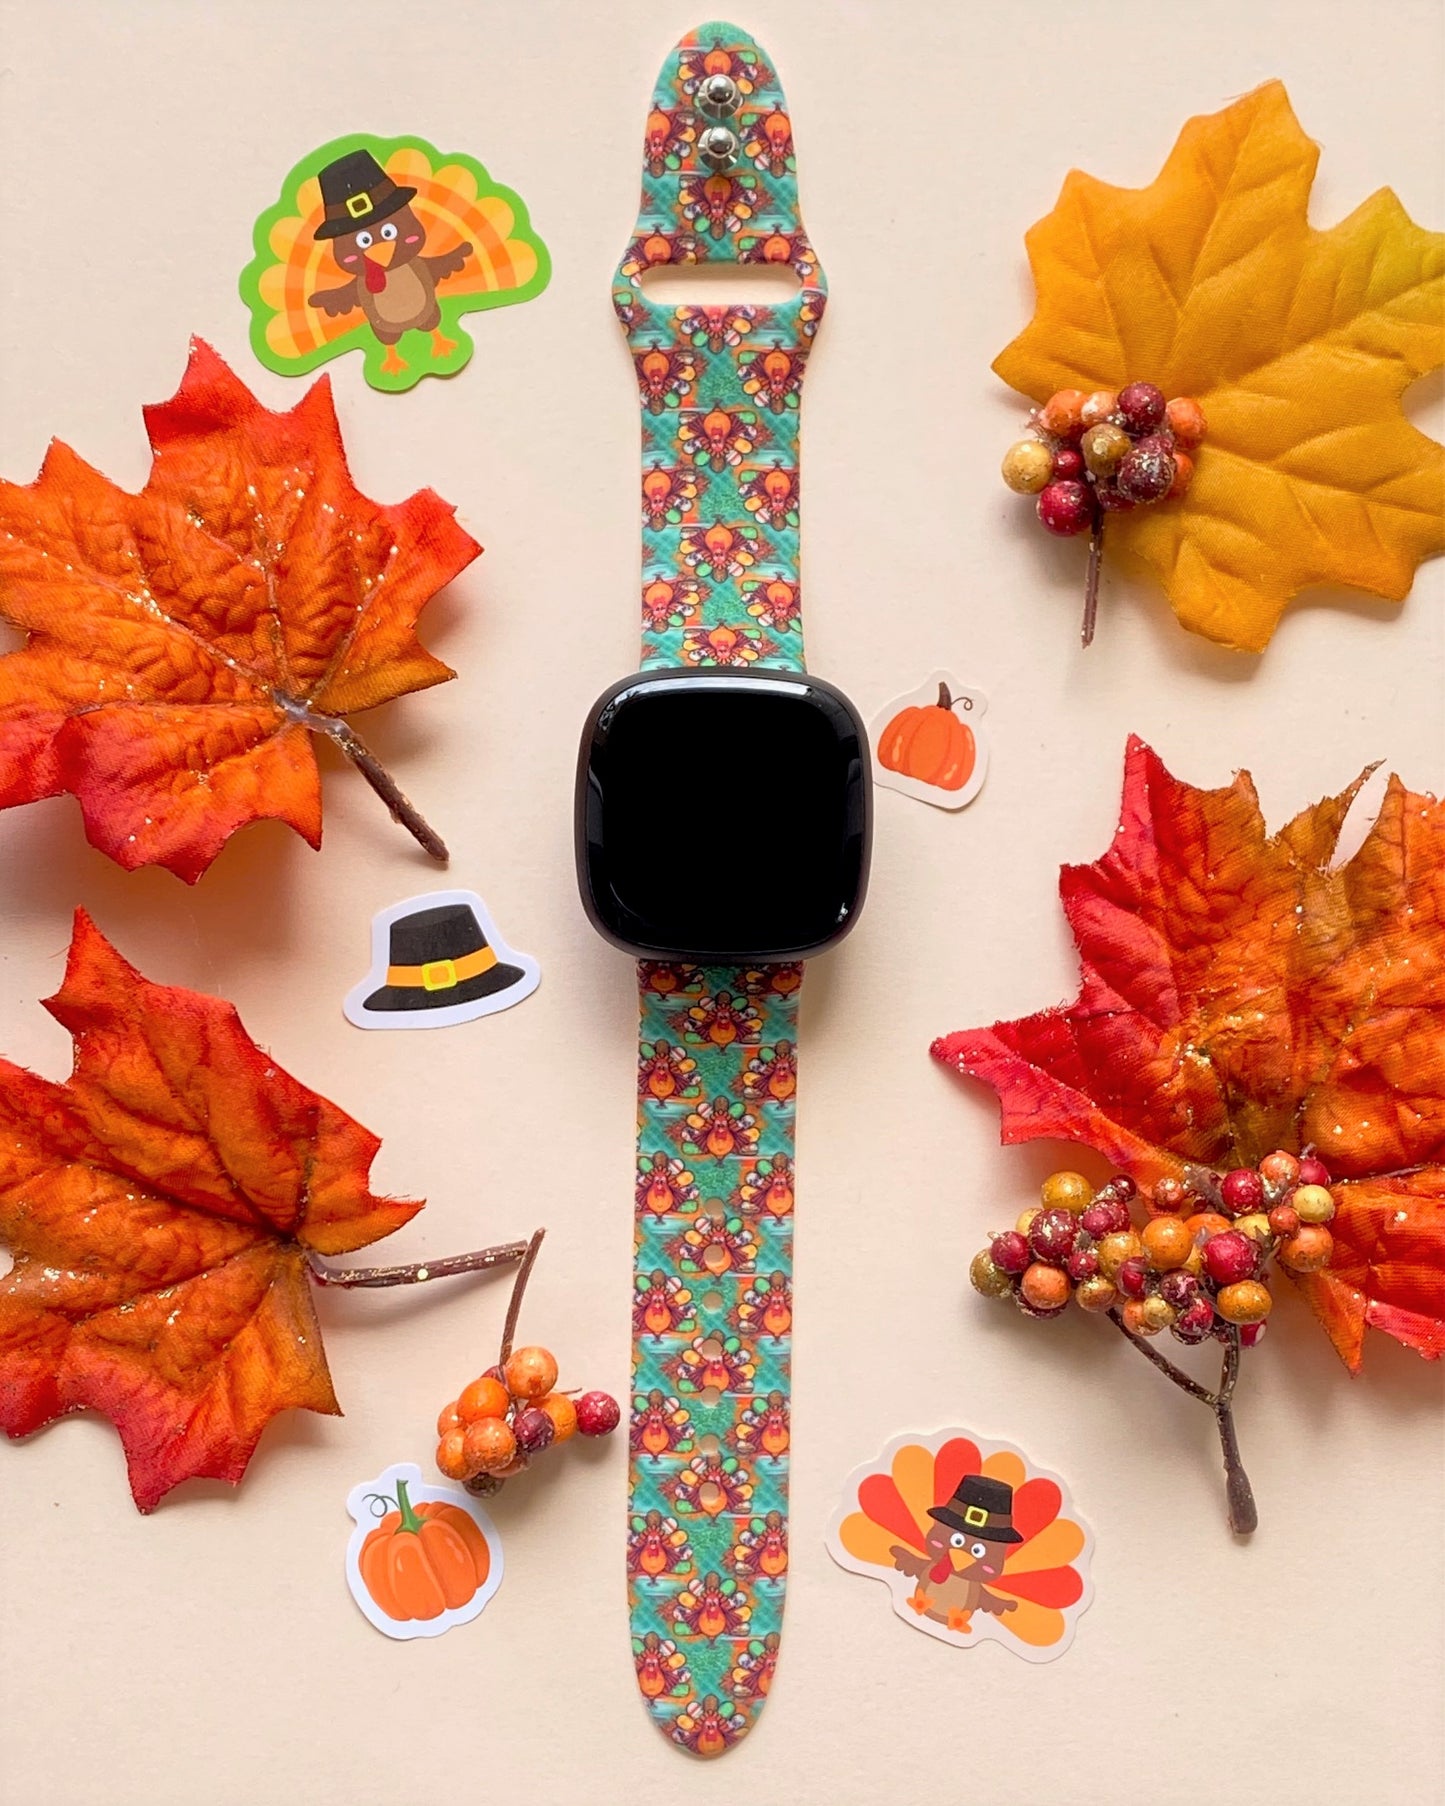 Turkey Thanksgiving Fitbit Versa 1/2 Watch Band